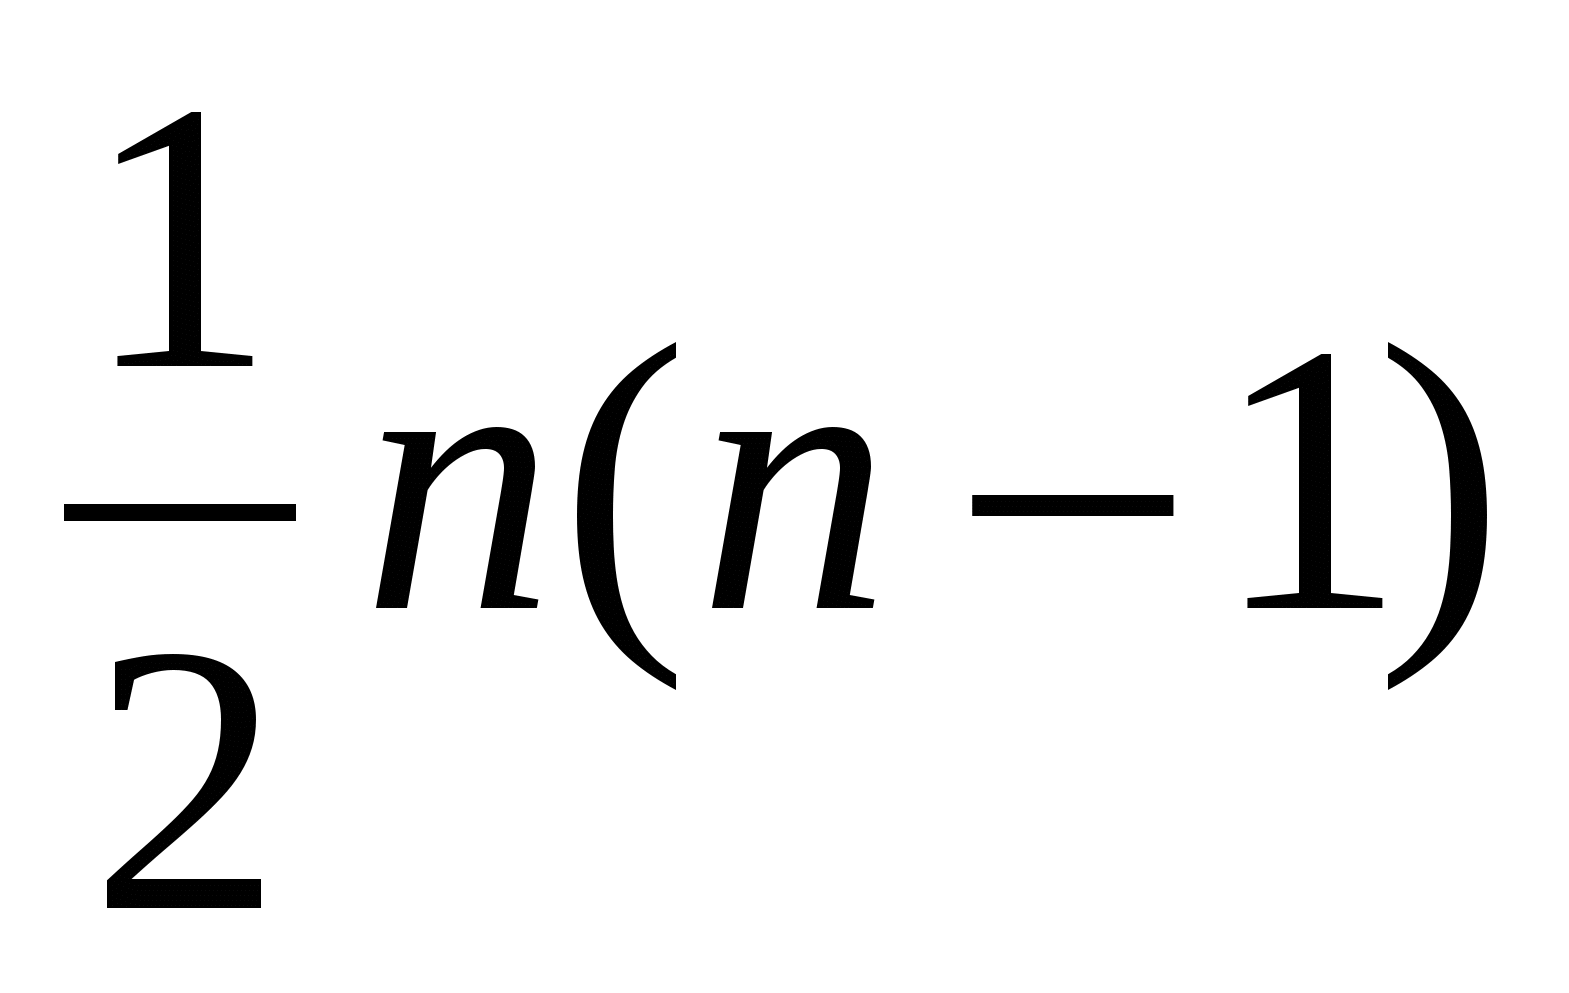 N(N-1)/2. 2n+1. (1+1/N)^N. (N+1)! - N!/(N+1)!.